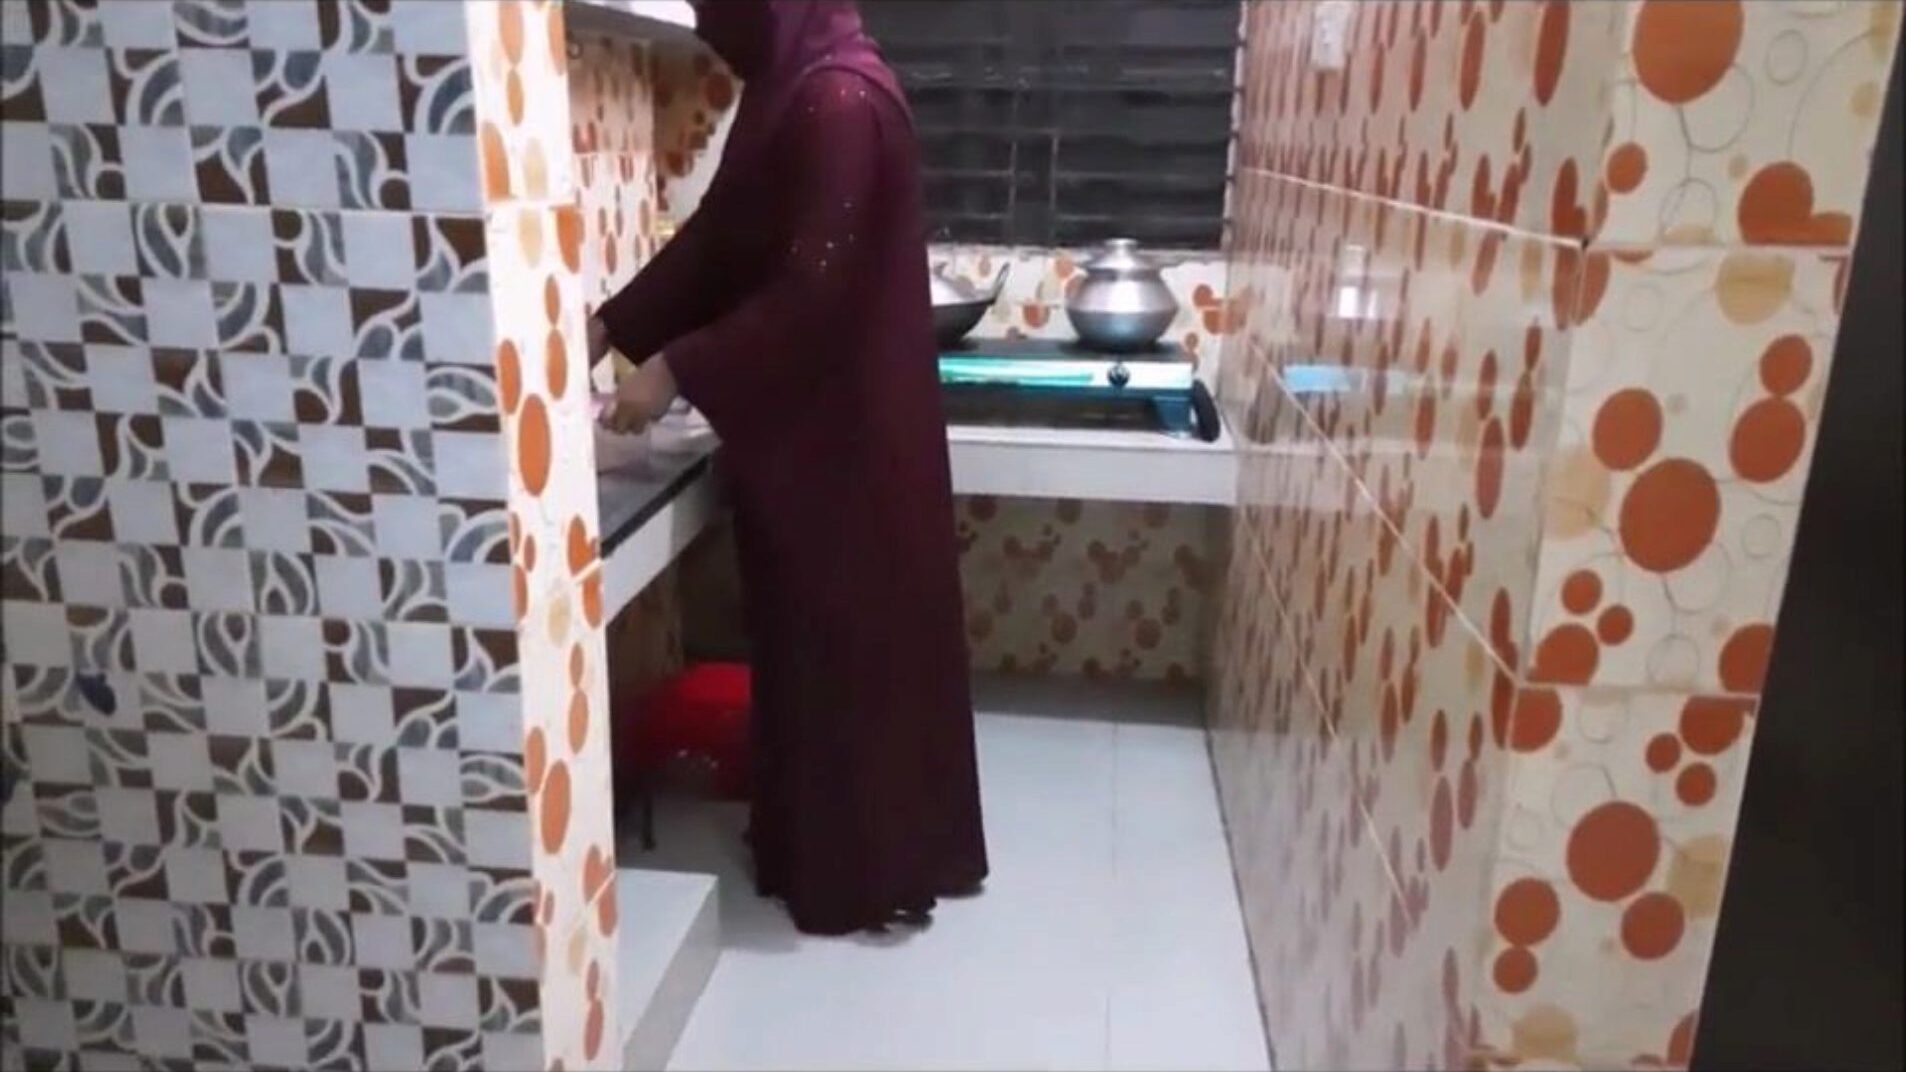 мусульманская сестра в законе кухонного трахаются с шурина смотреть мусульманскую невестку кухонного трахаются с шурин р-1 фильм на xhamster - окончательный выбор бесплатных АРАБСКИХ эпизодов порнография трубки индийского HD